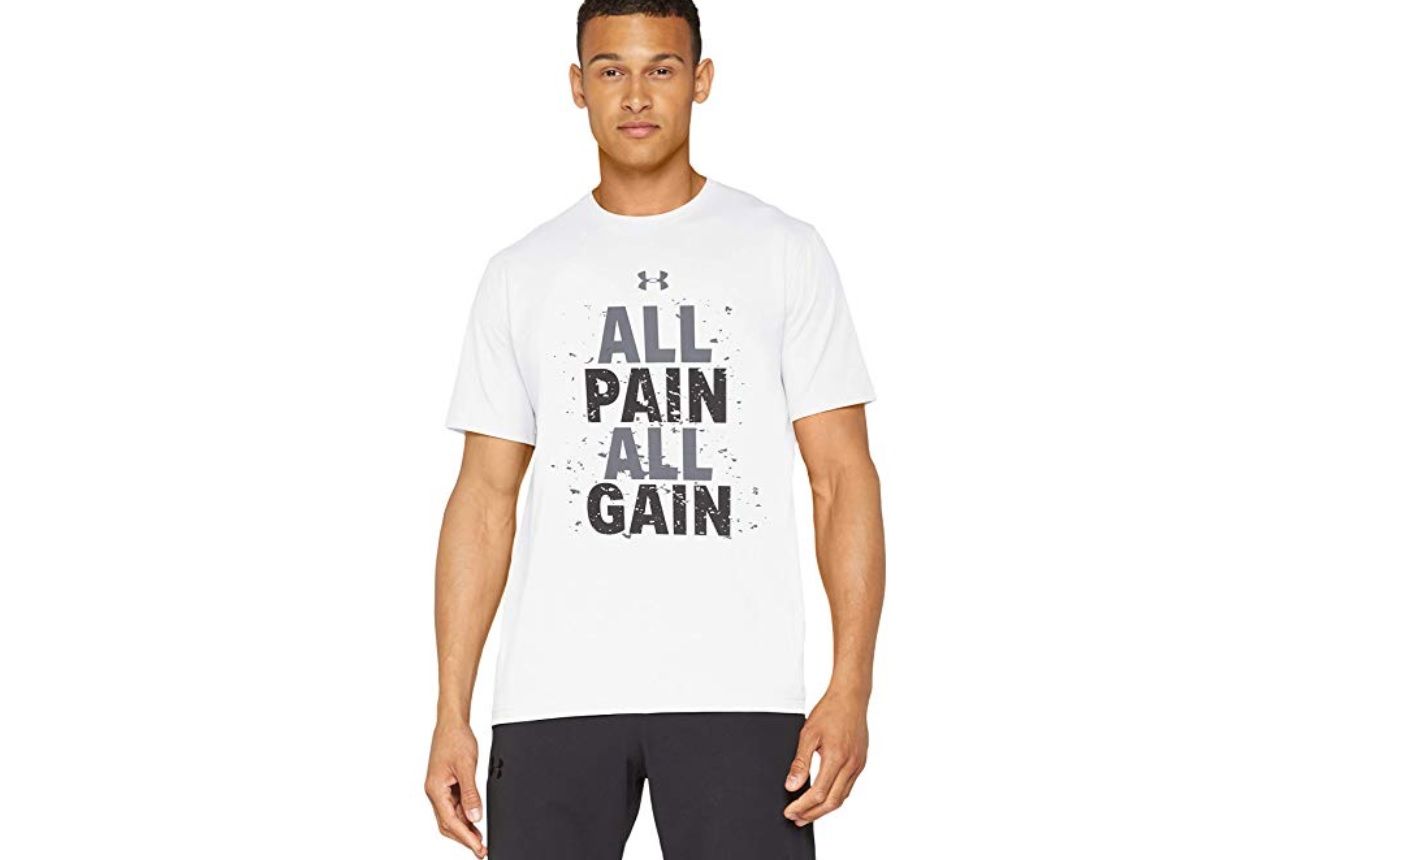 ¡Chollo! Camiseta Under Armour All Pain All Gain desde sólo 13,70€ ¡En 3 colores diferentes!